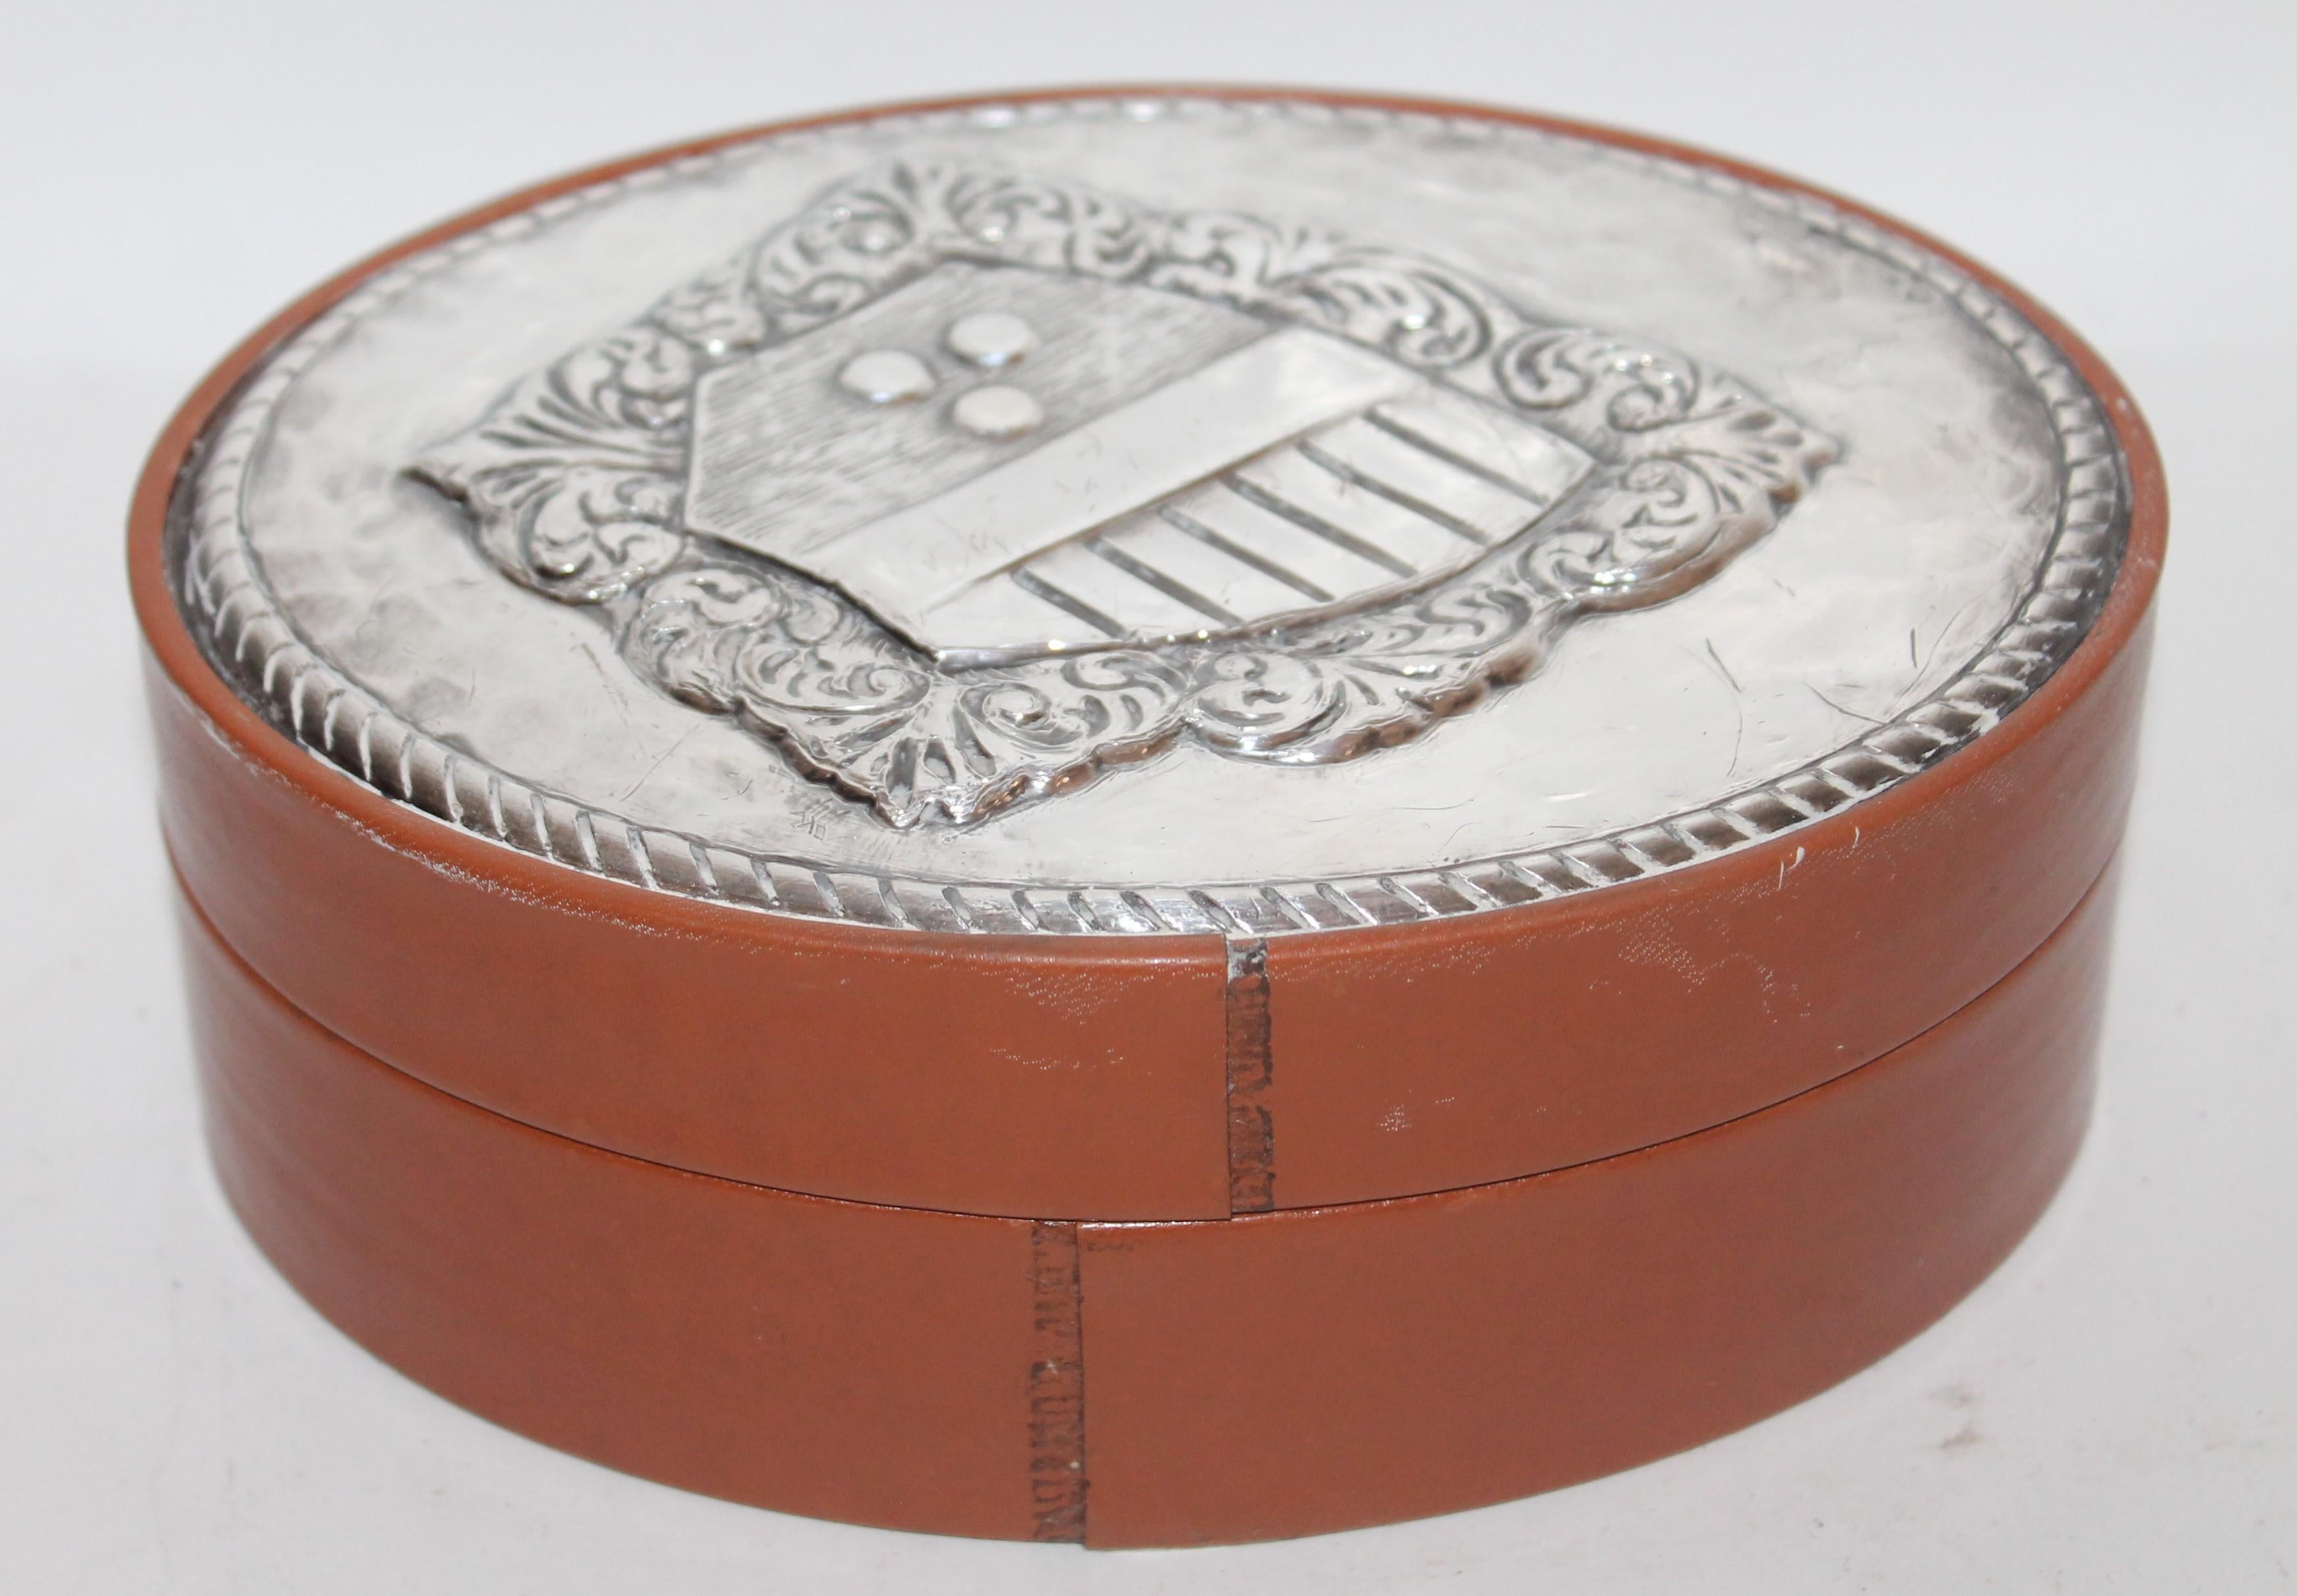 Diese feinen Sterling Silber auf Leder handgefertigte Herren-Schmuck-Box gelegt. Perfekter Zustand.